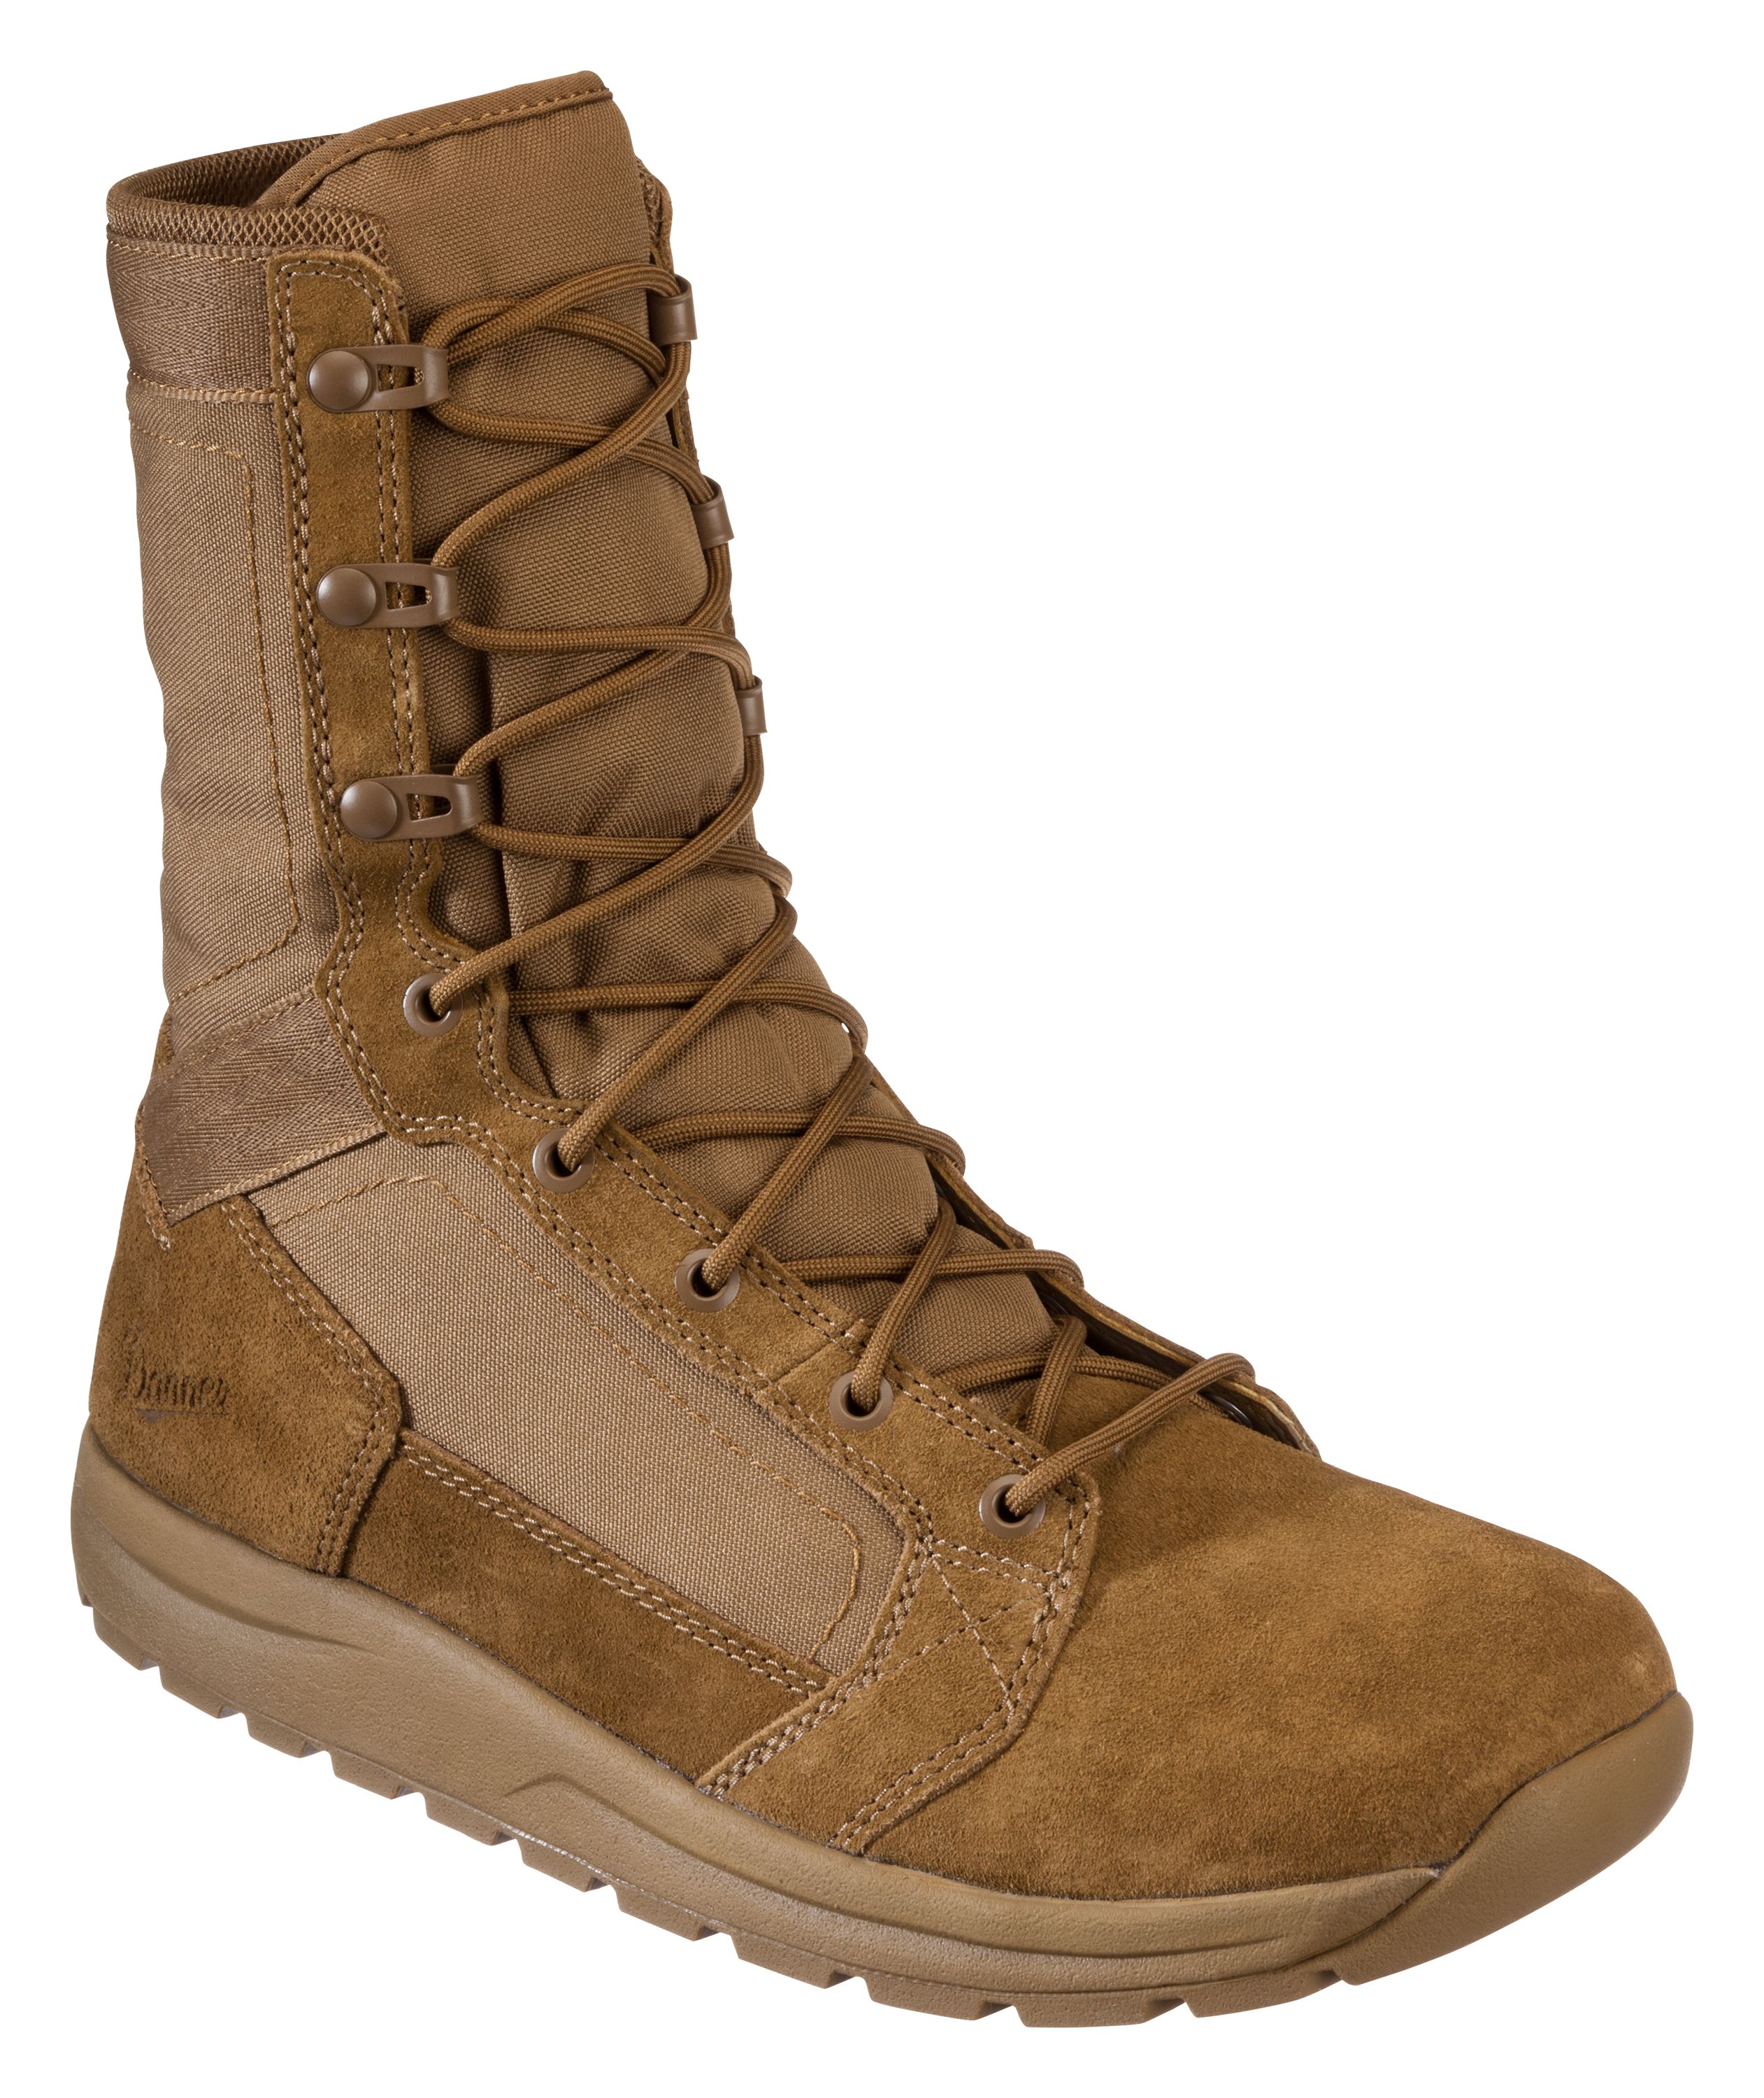 Danner Tachyon Tactical Boots for Men - Coyote - 14M